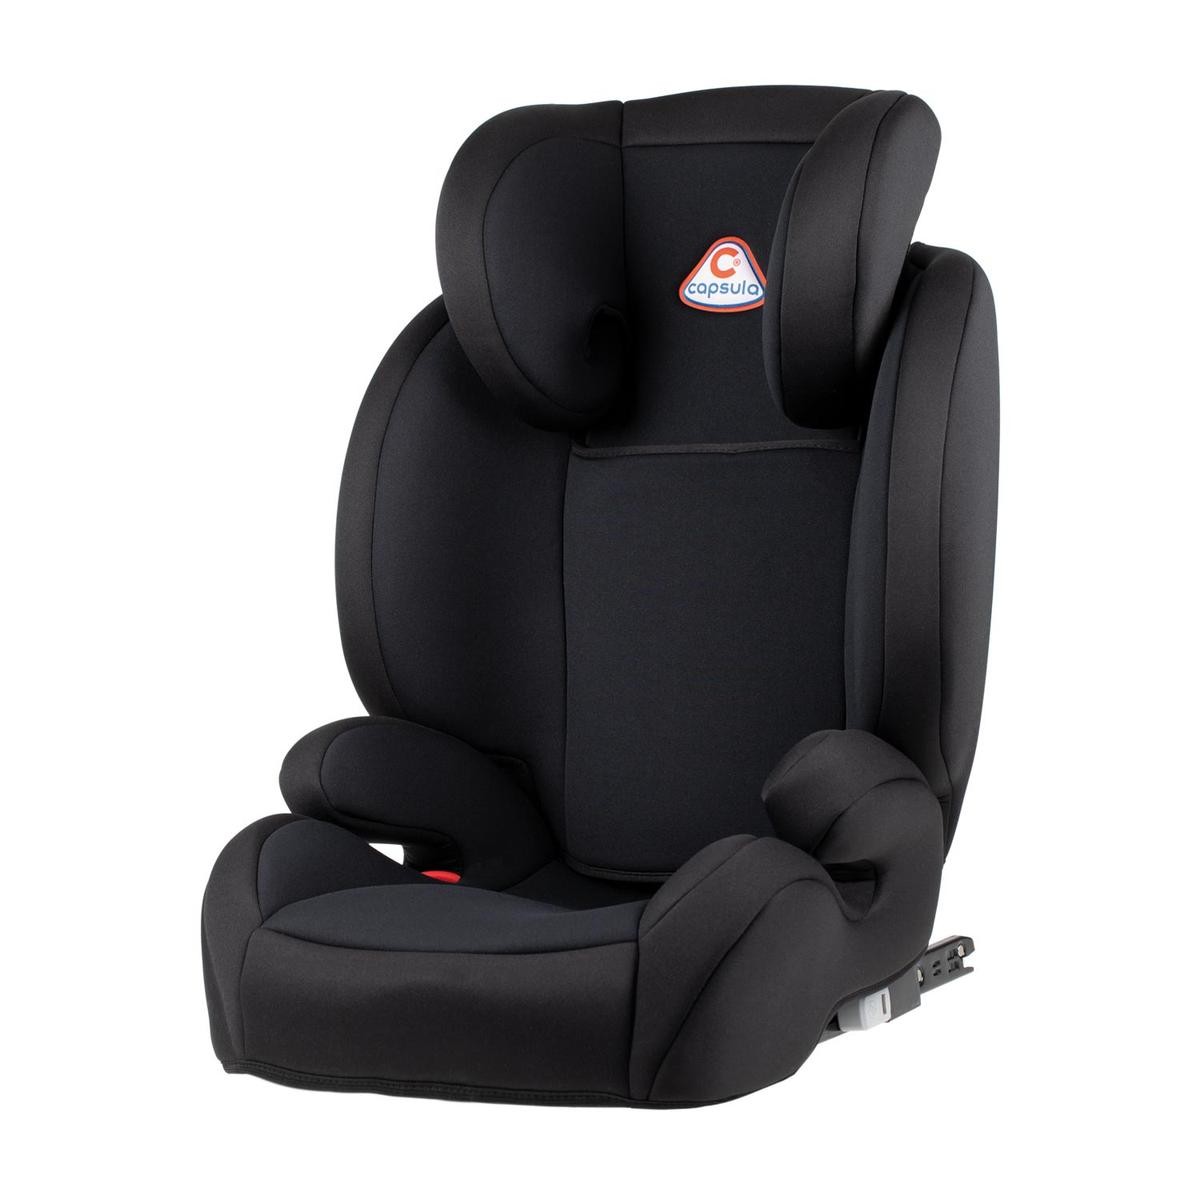 capsula MT5X 772110 Child car seat SKODA